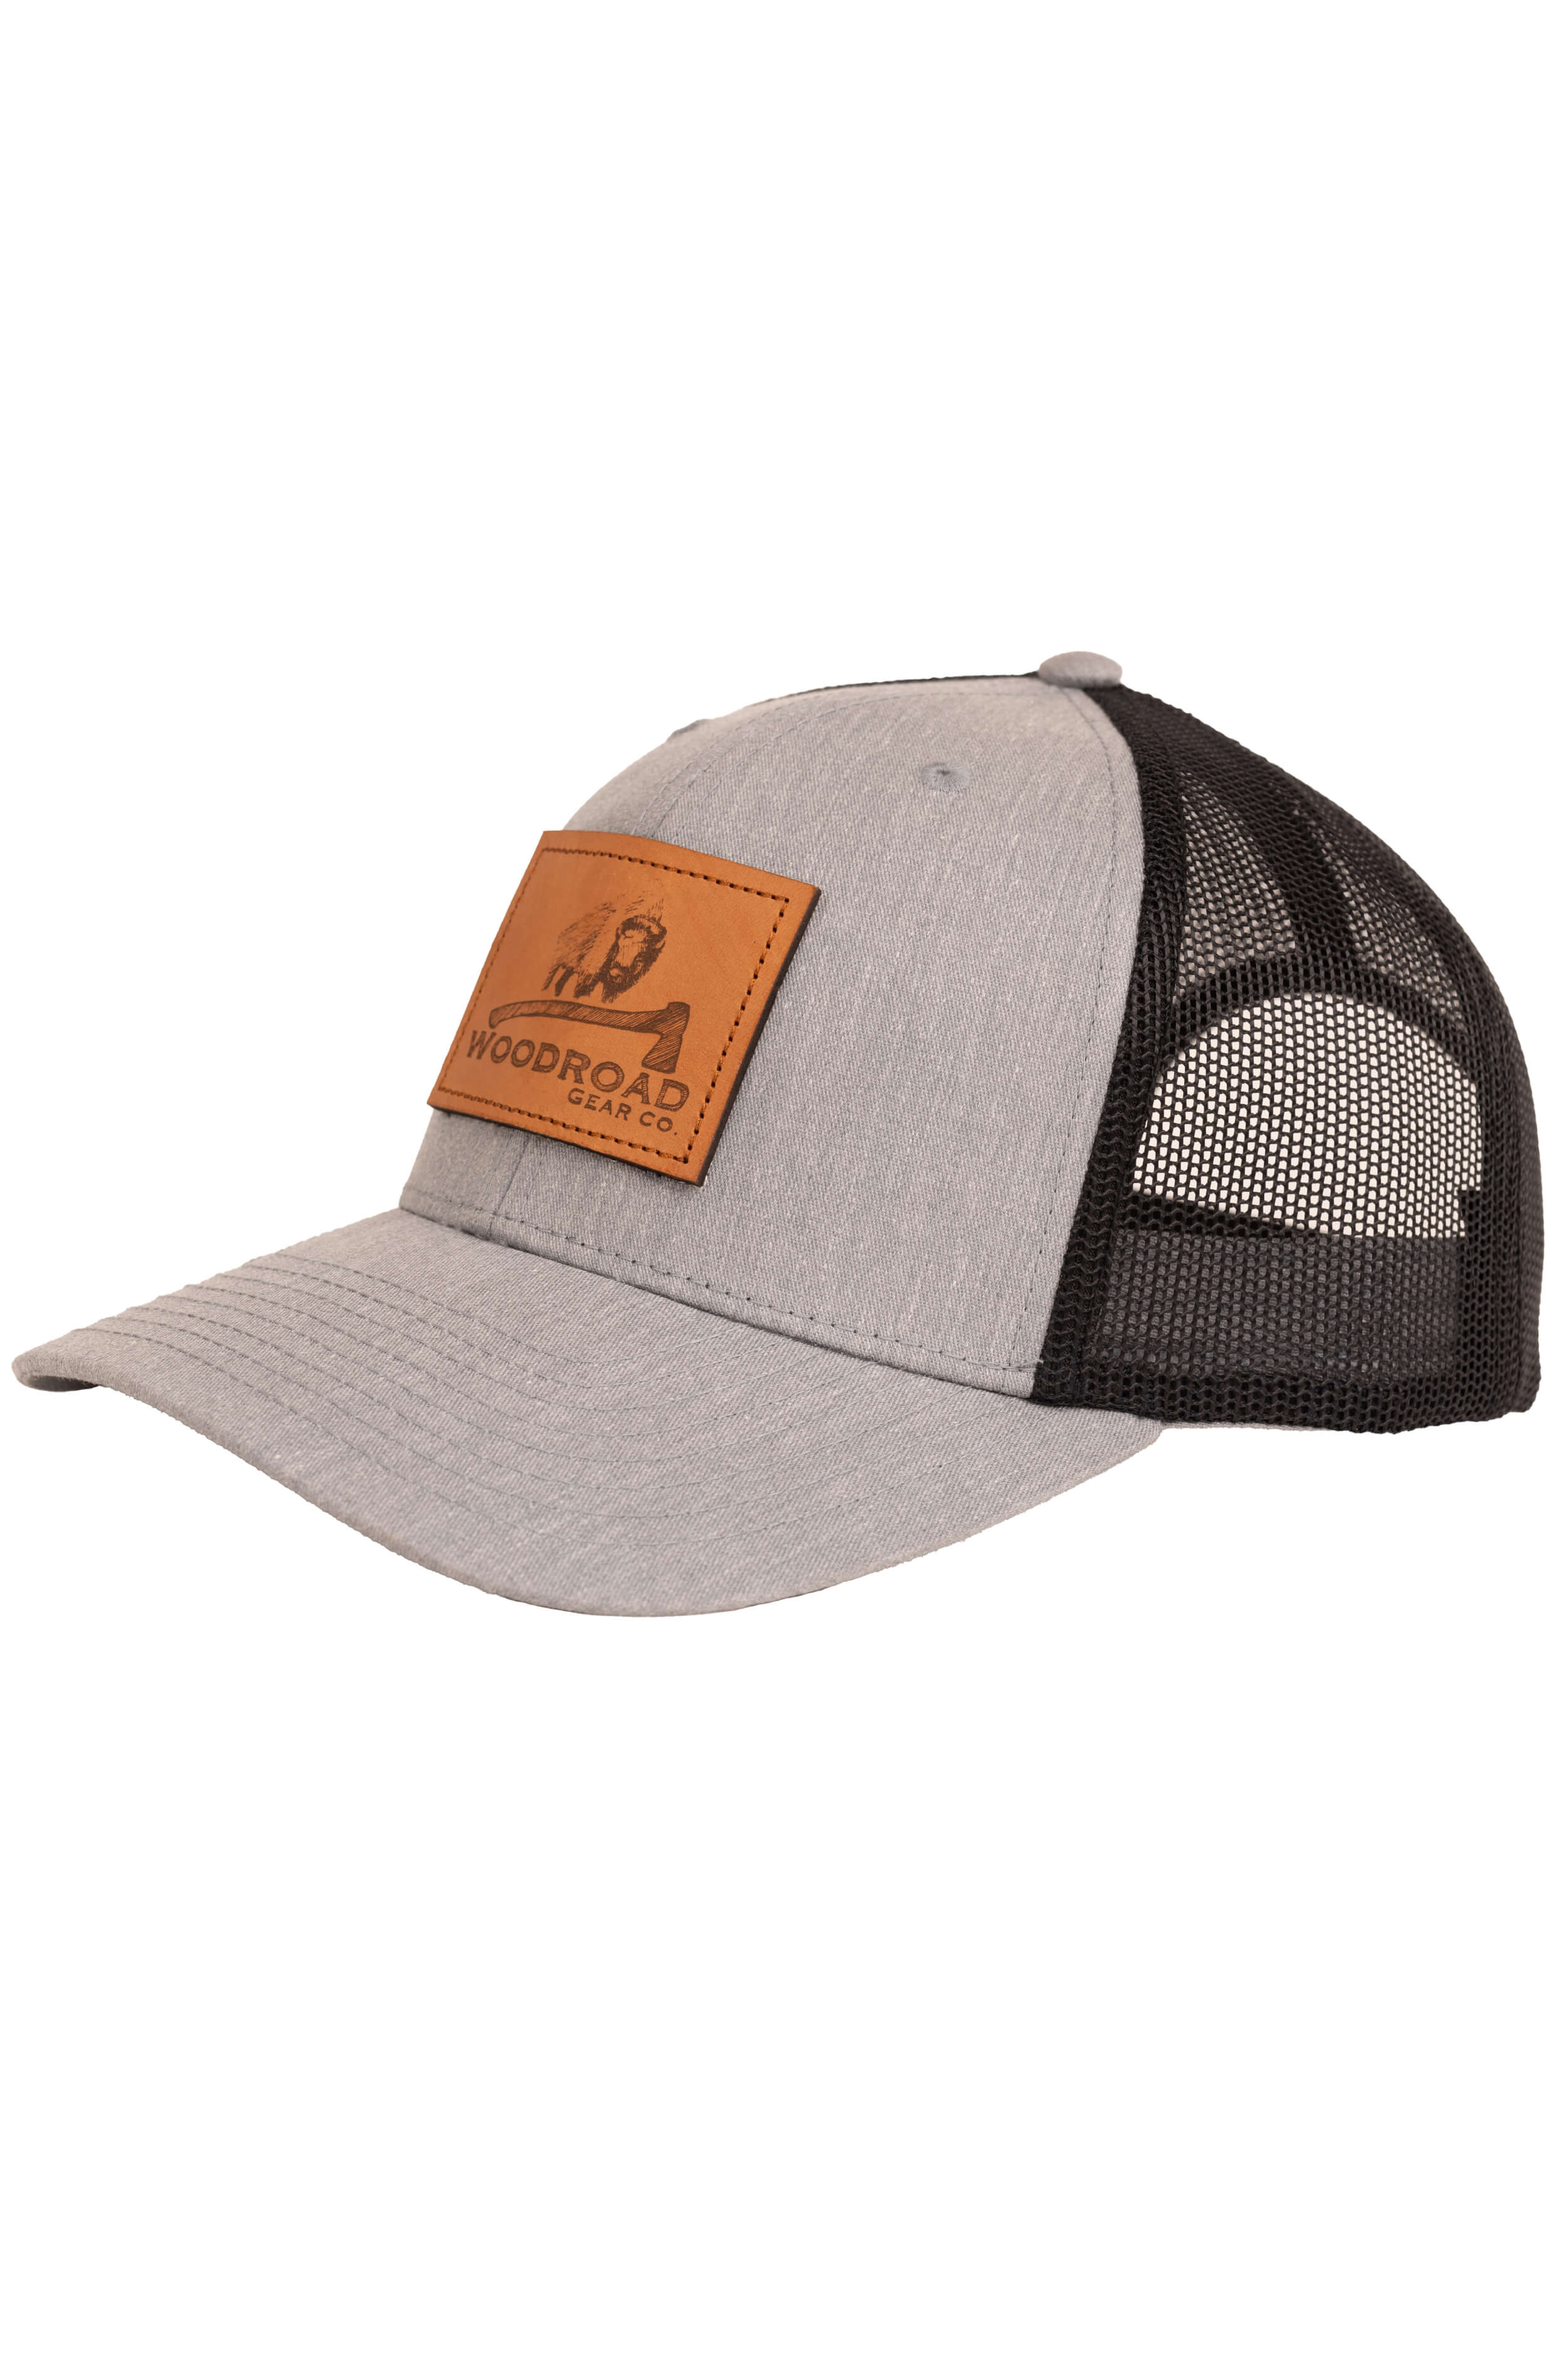 Art Bison Trucker Hat - Woodroad Gear Co